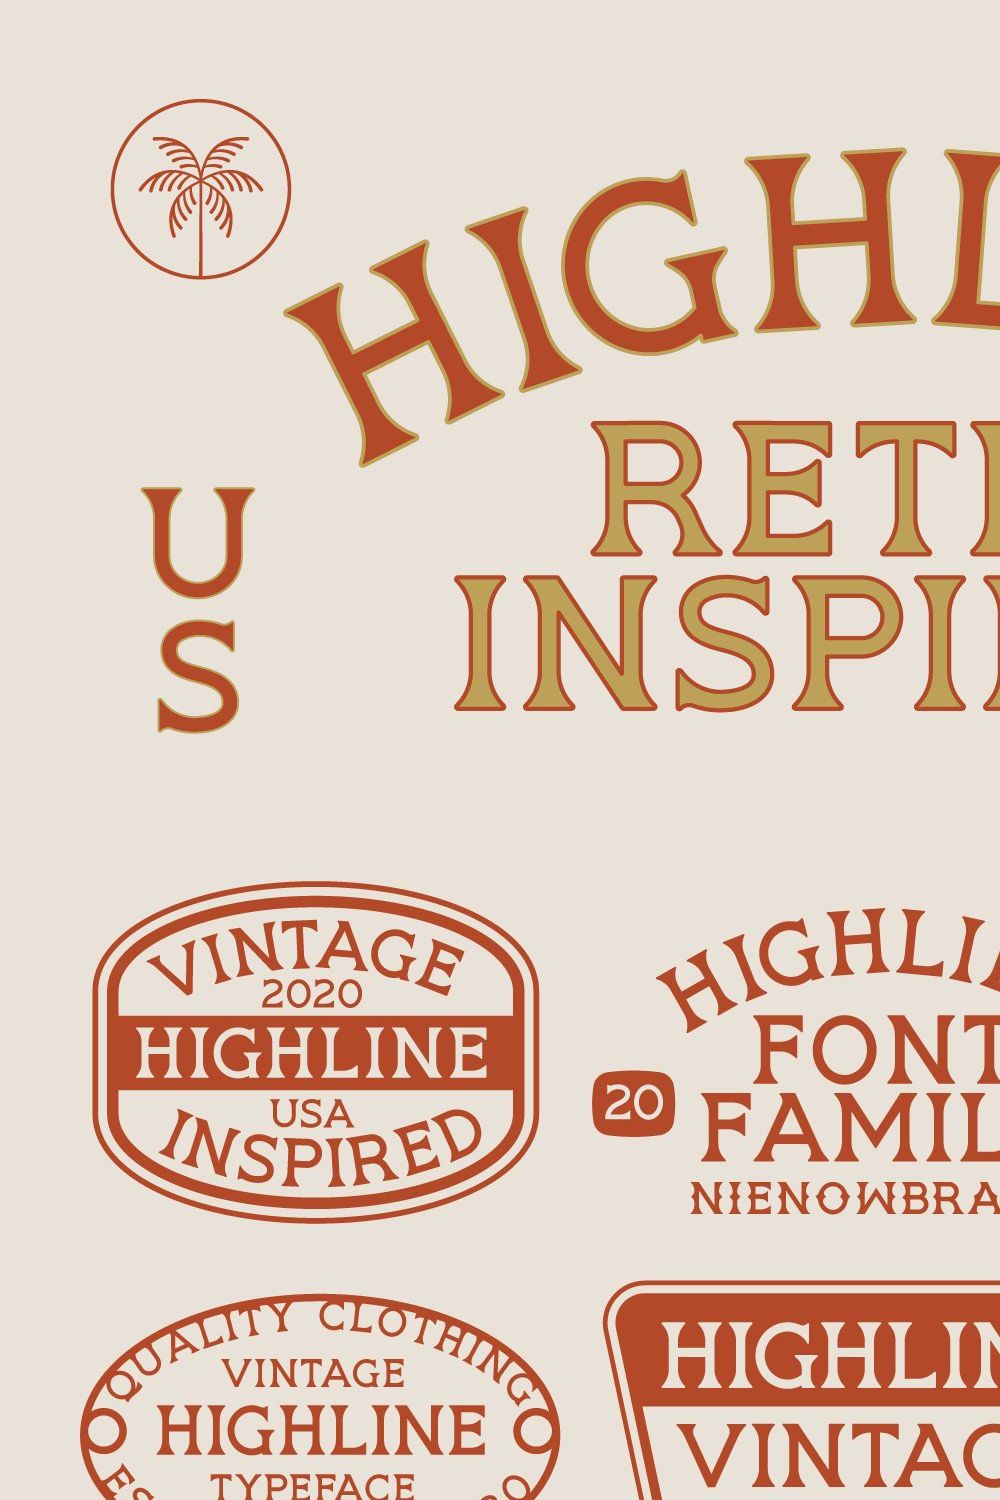 HIGHLINE Font | Vintage Font pinterest preview image.